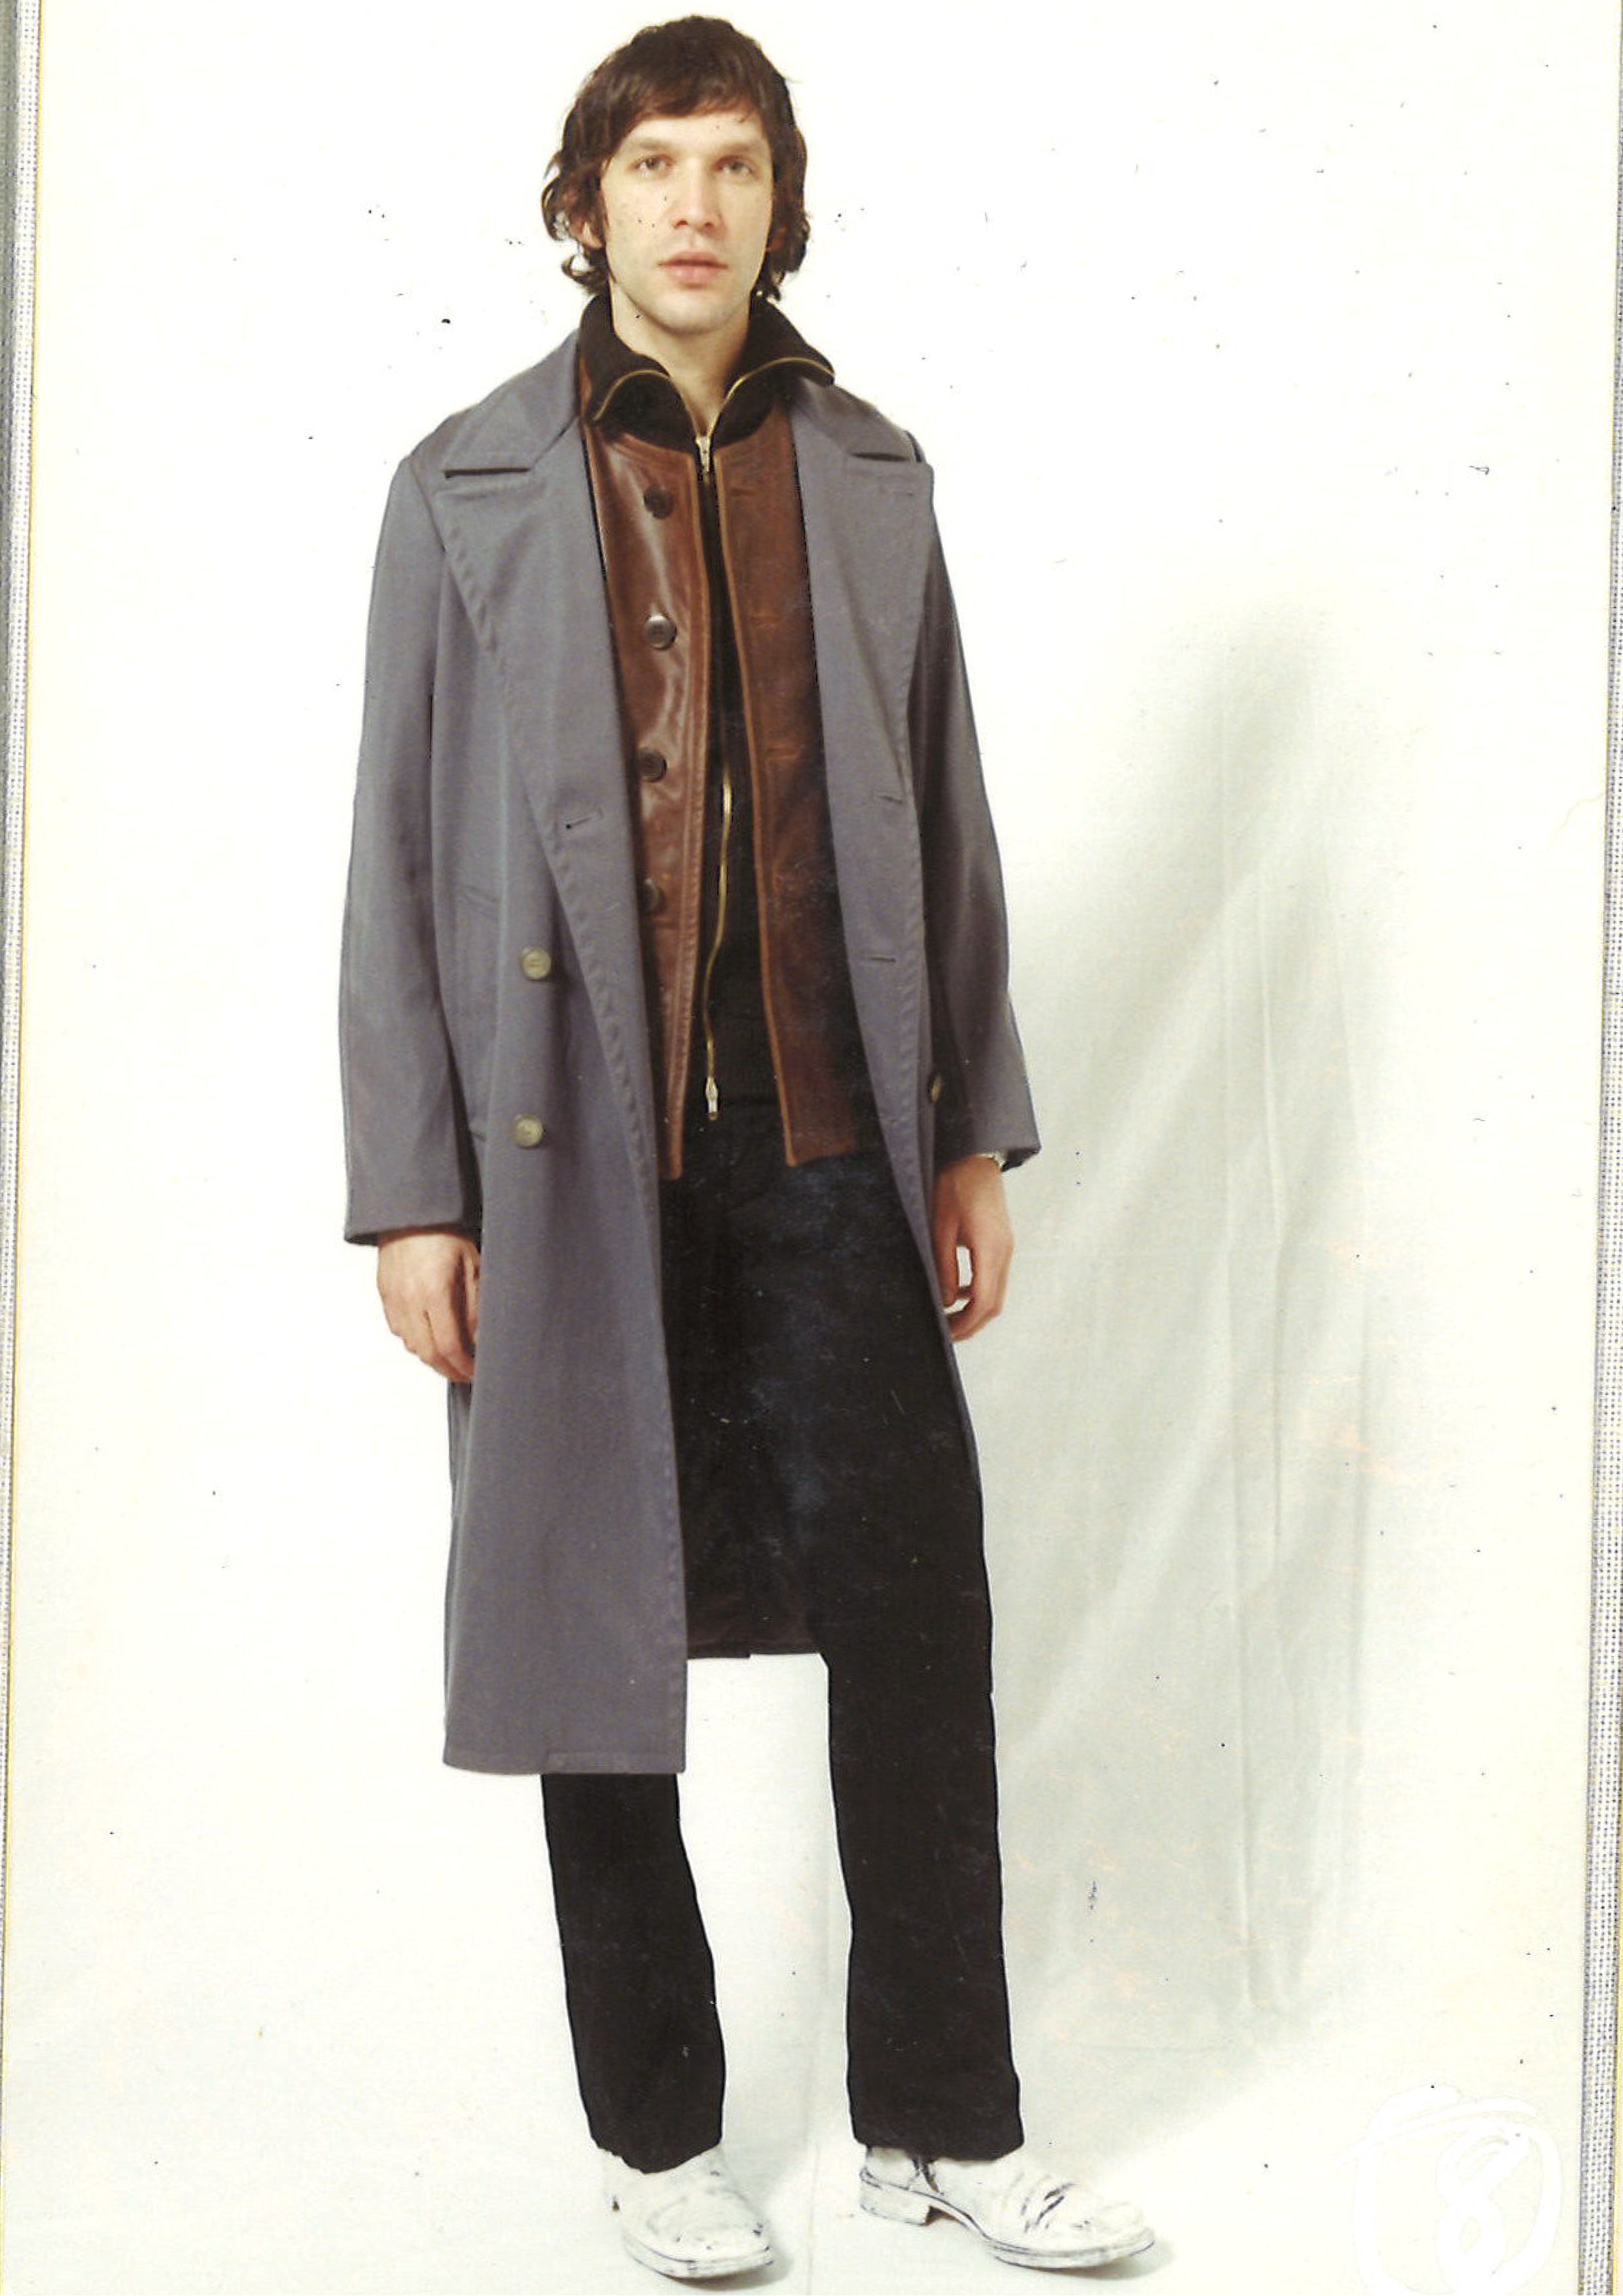 Maison Martin Margiela Lookbook
Menswear Collection Autumn/Winter 2001-02